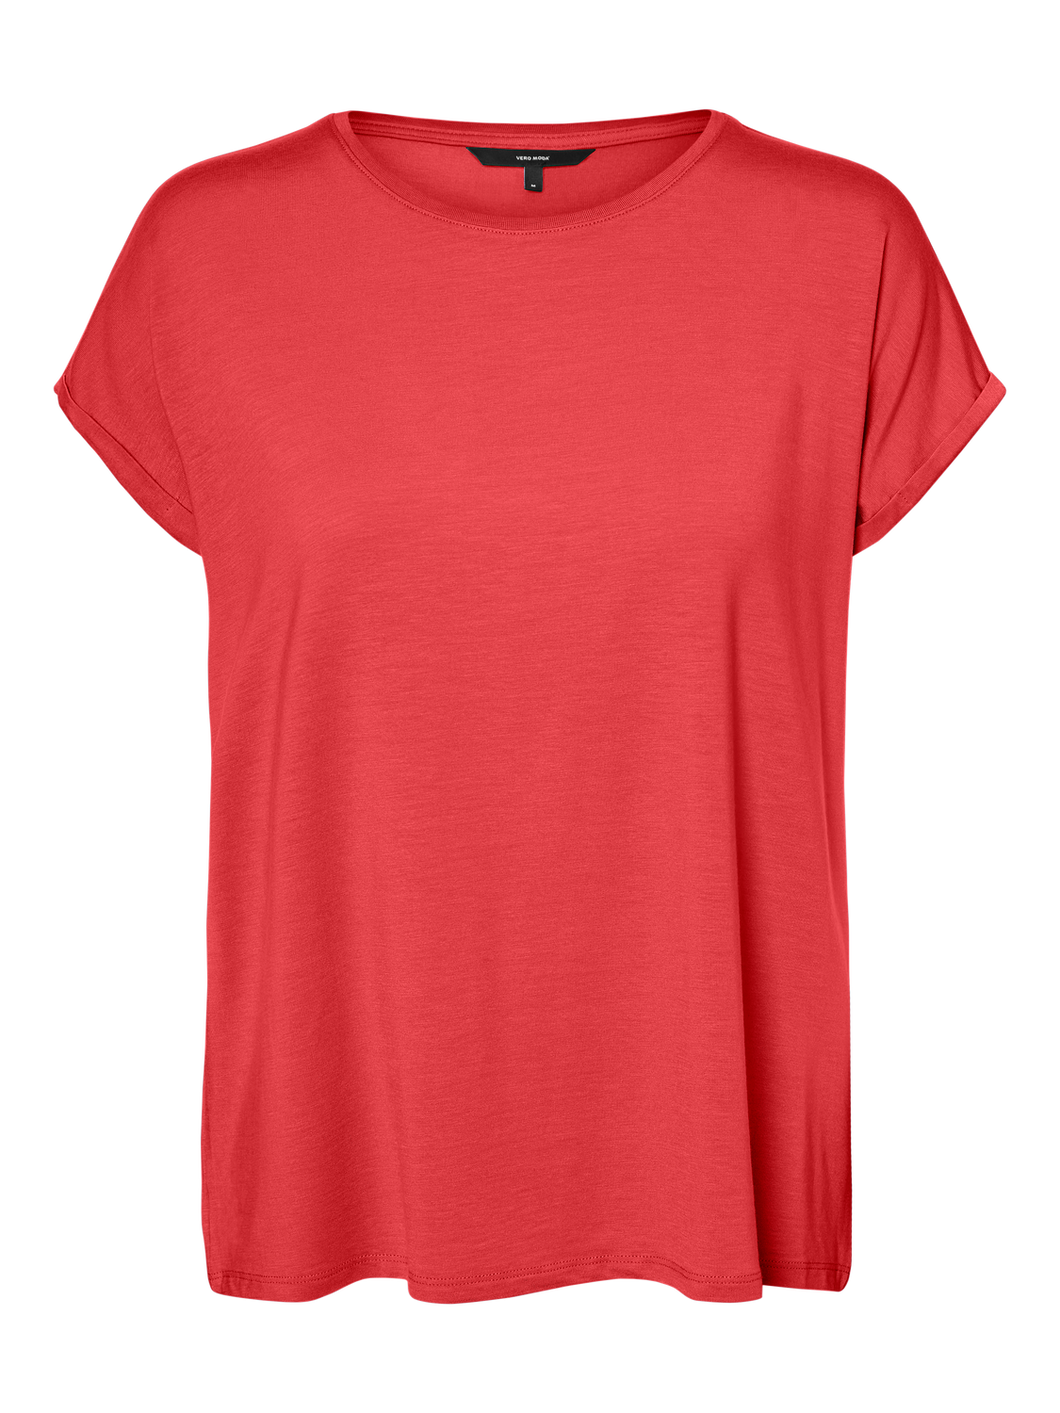 VMAVA T-Shirt - Cayenne